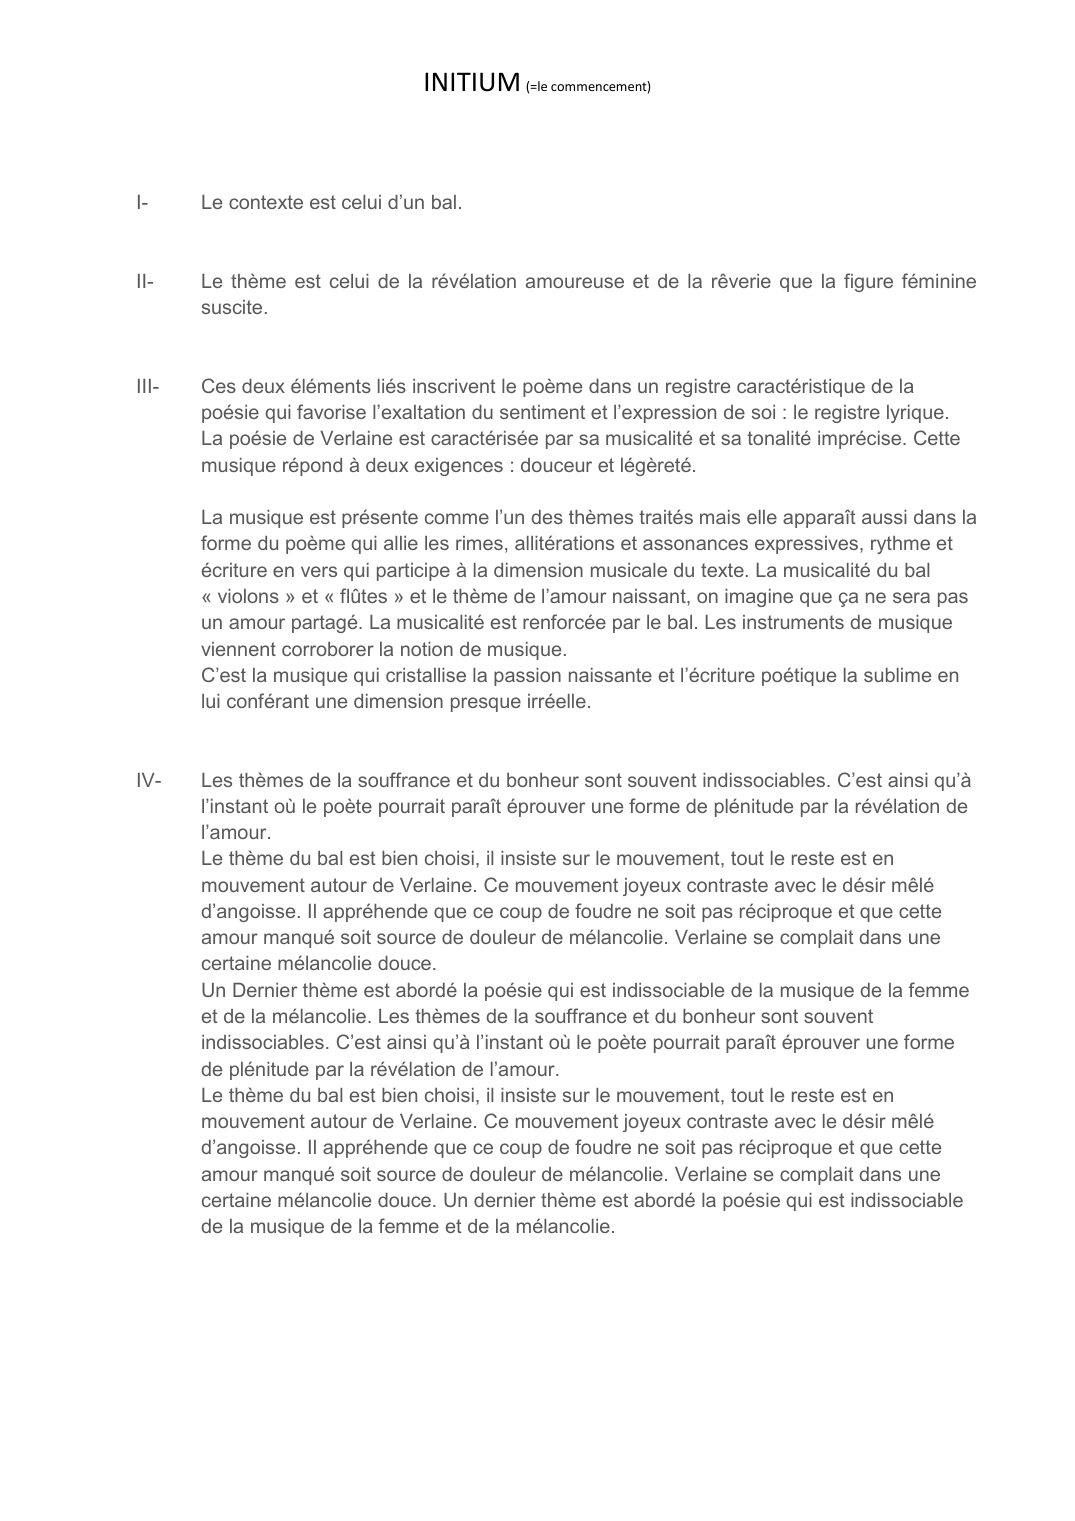 Prévisualisation du document initium de Verlaine (commentaire)